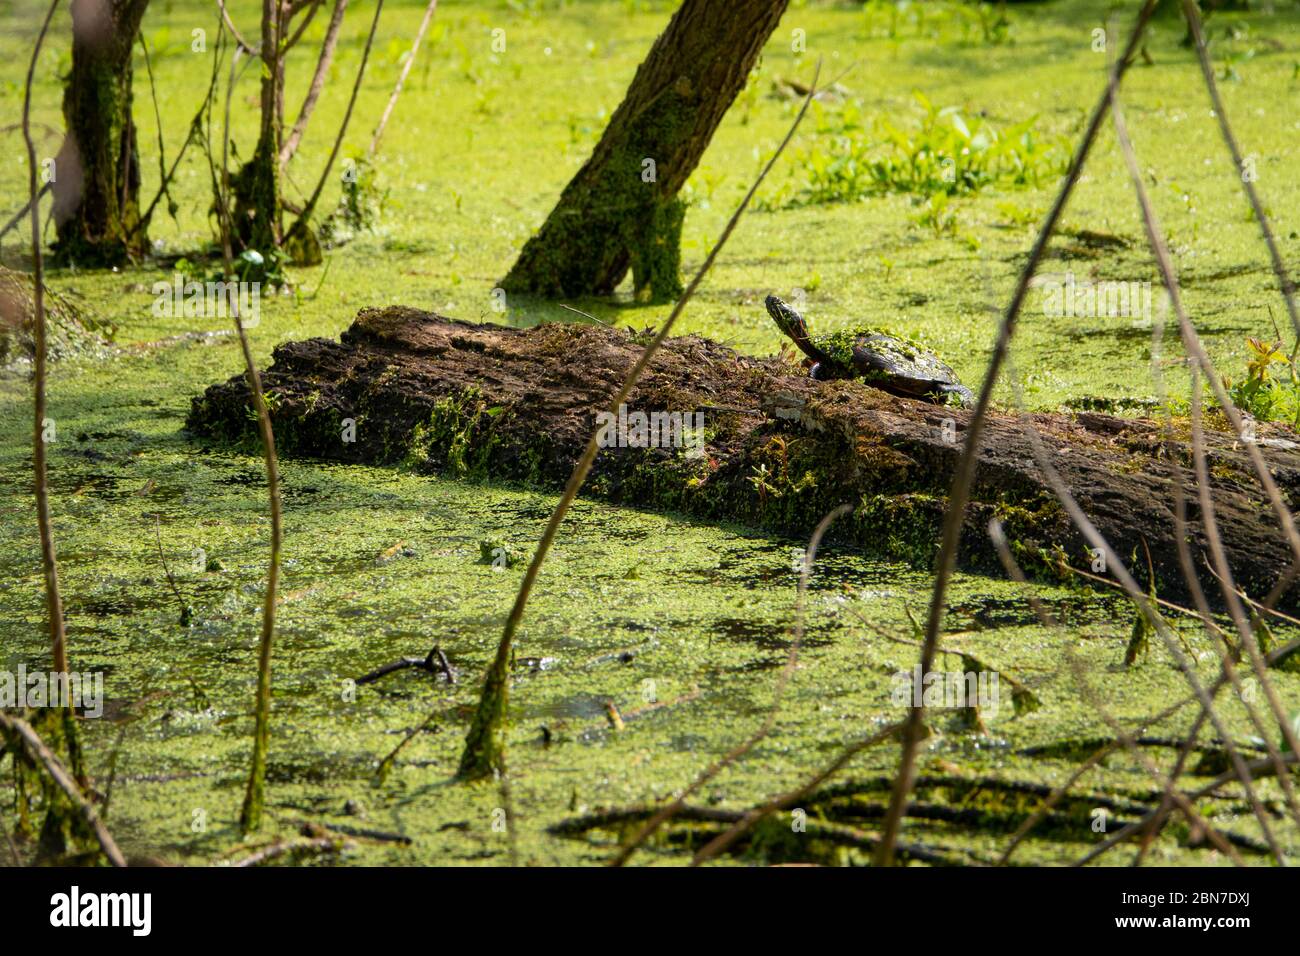 USA Maryland Poolesville McKee Beshers Wildlife Management Area Schildkröten auf einem Holzklotch in Entenweed bedeckt Stockfoto